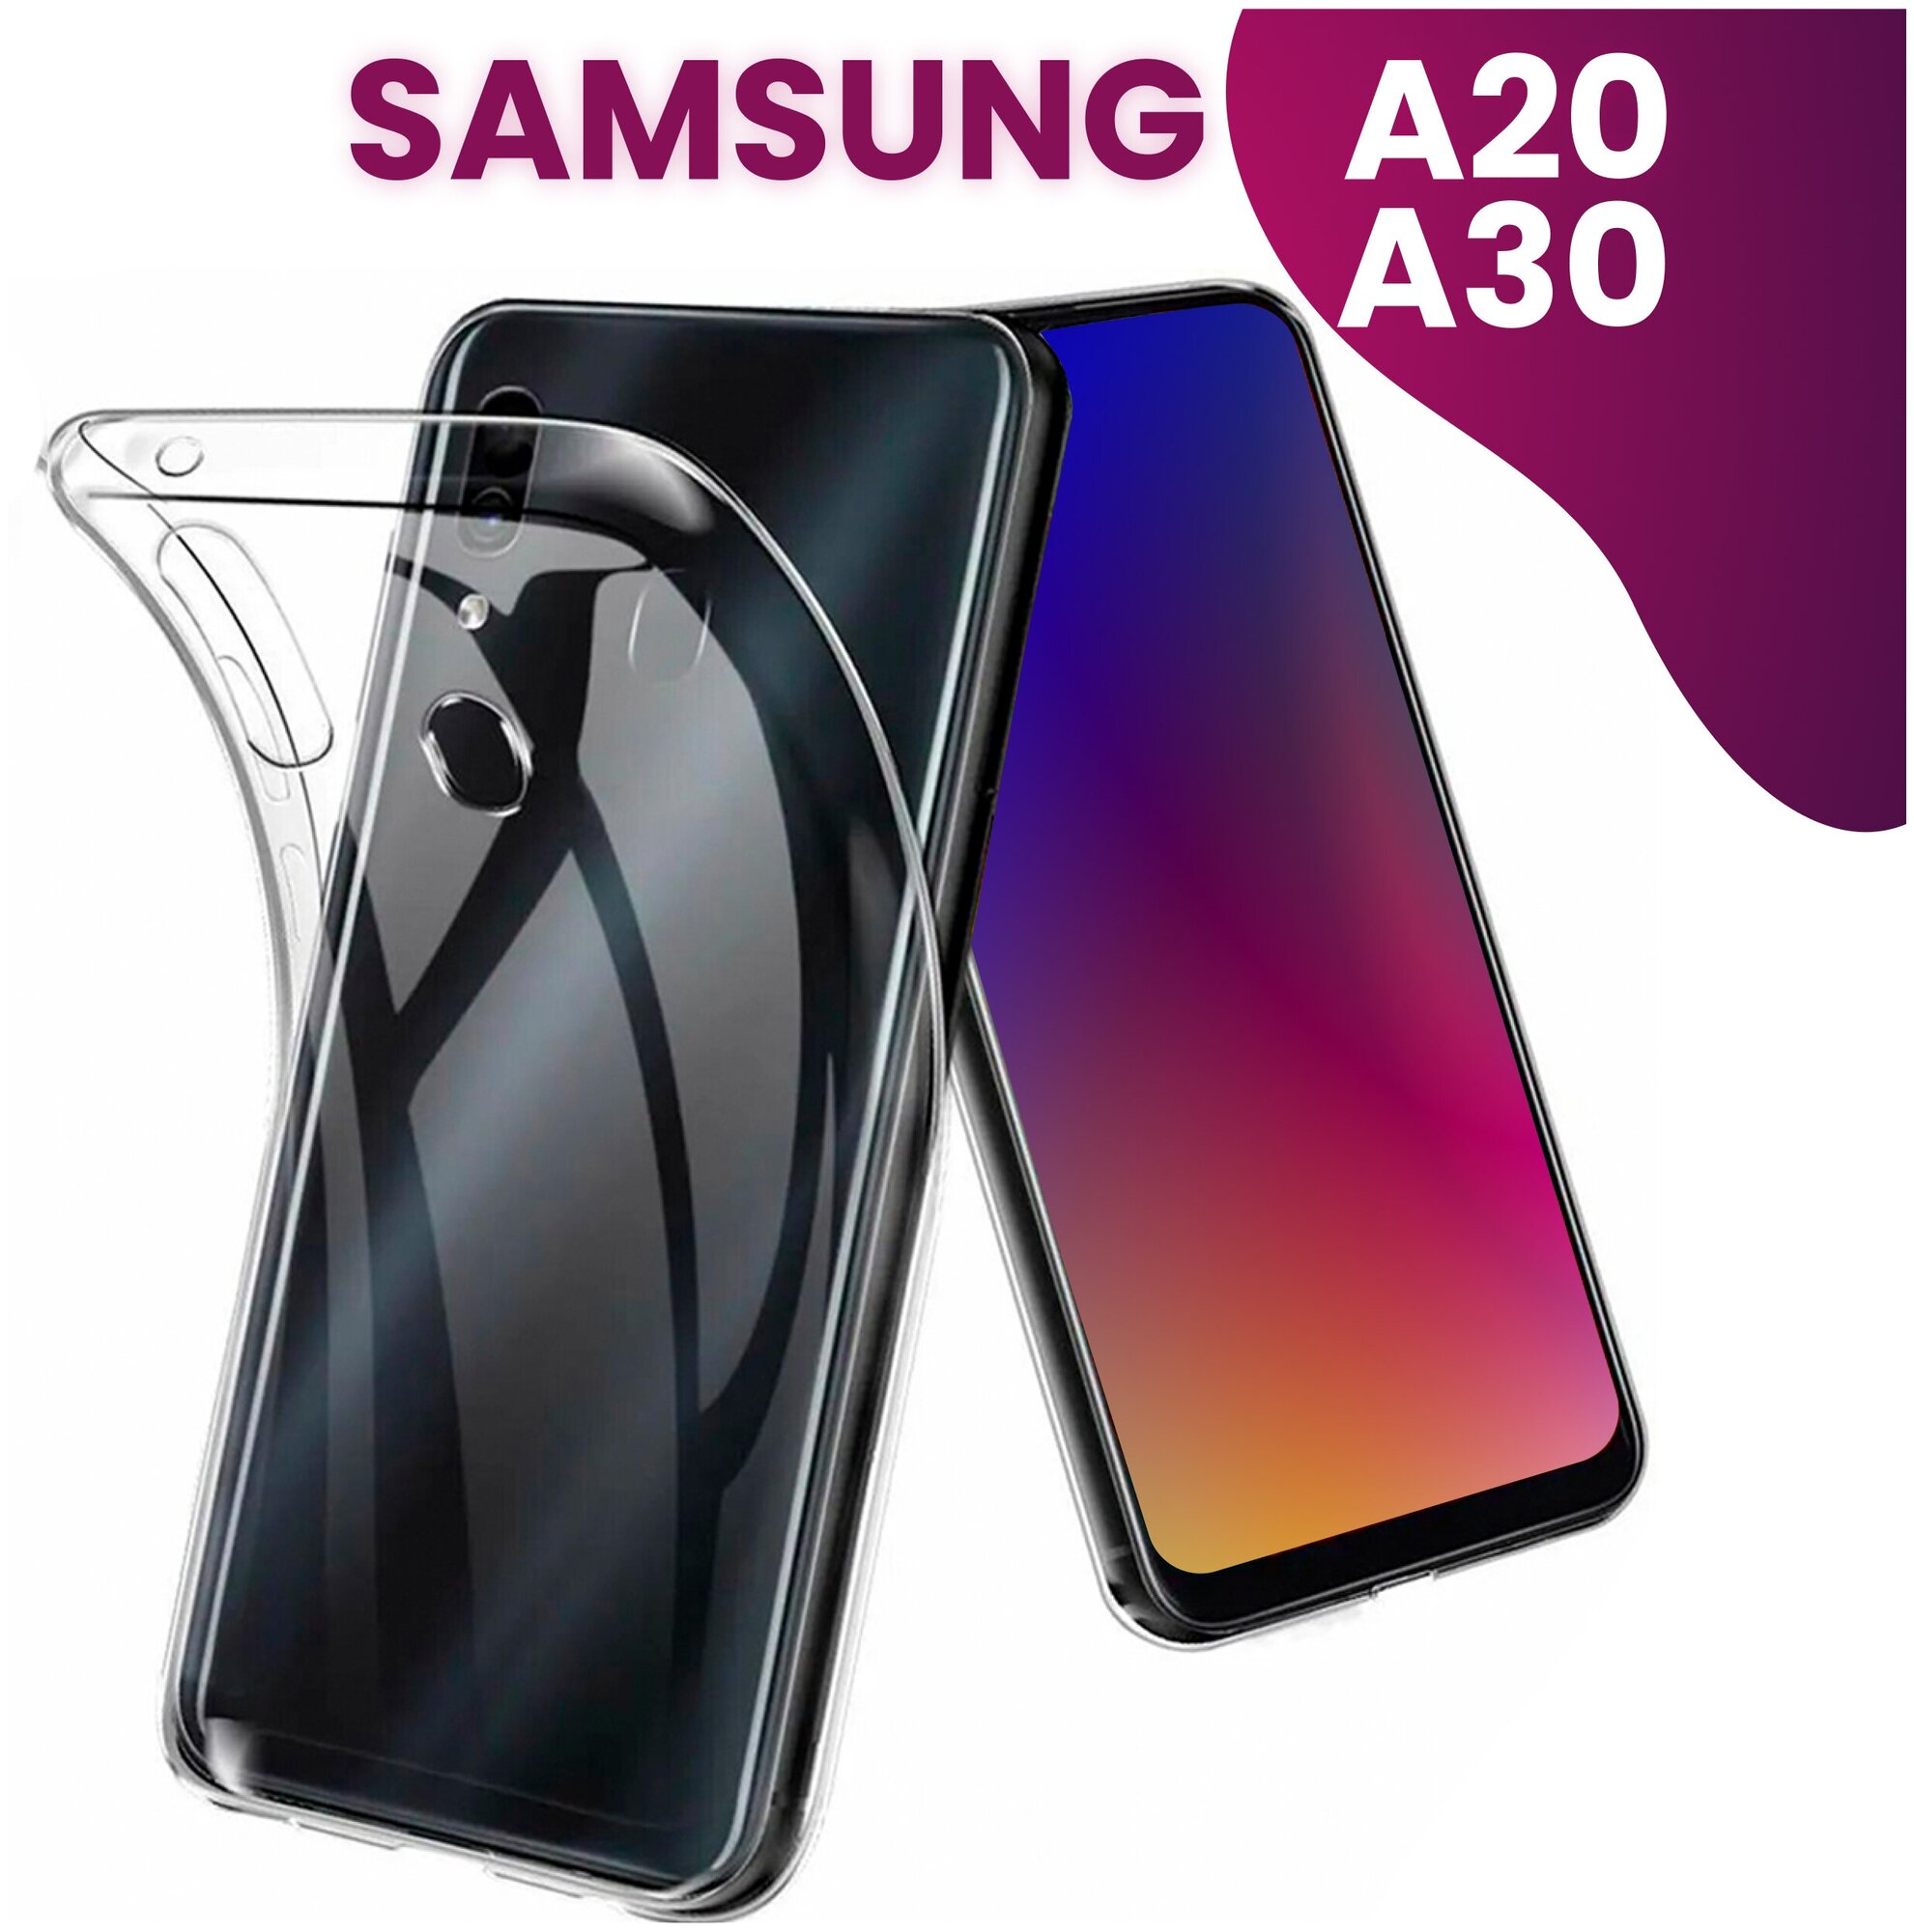 Ультратонкий силиконовый чехол для телефона Samsung Galaxy A20 и Samsung Galaxy A30 / Прозрачный защитный чехол для Самсунг Галакси А20 и А30